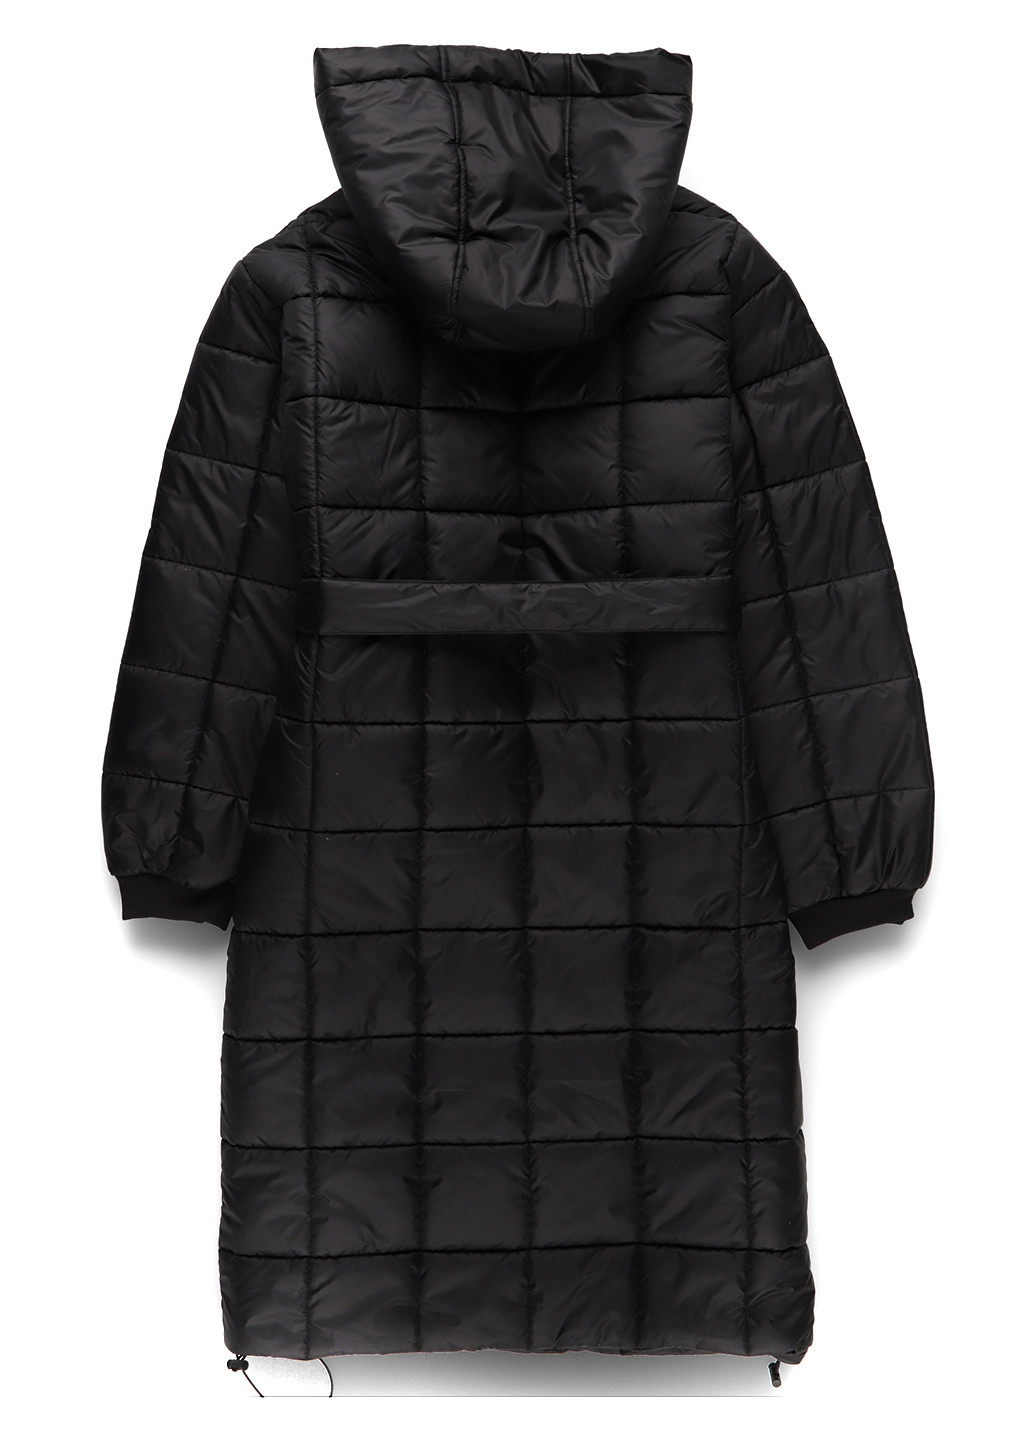 Черная демисезонная куртка куртка-пальто I SAW IT FIRST